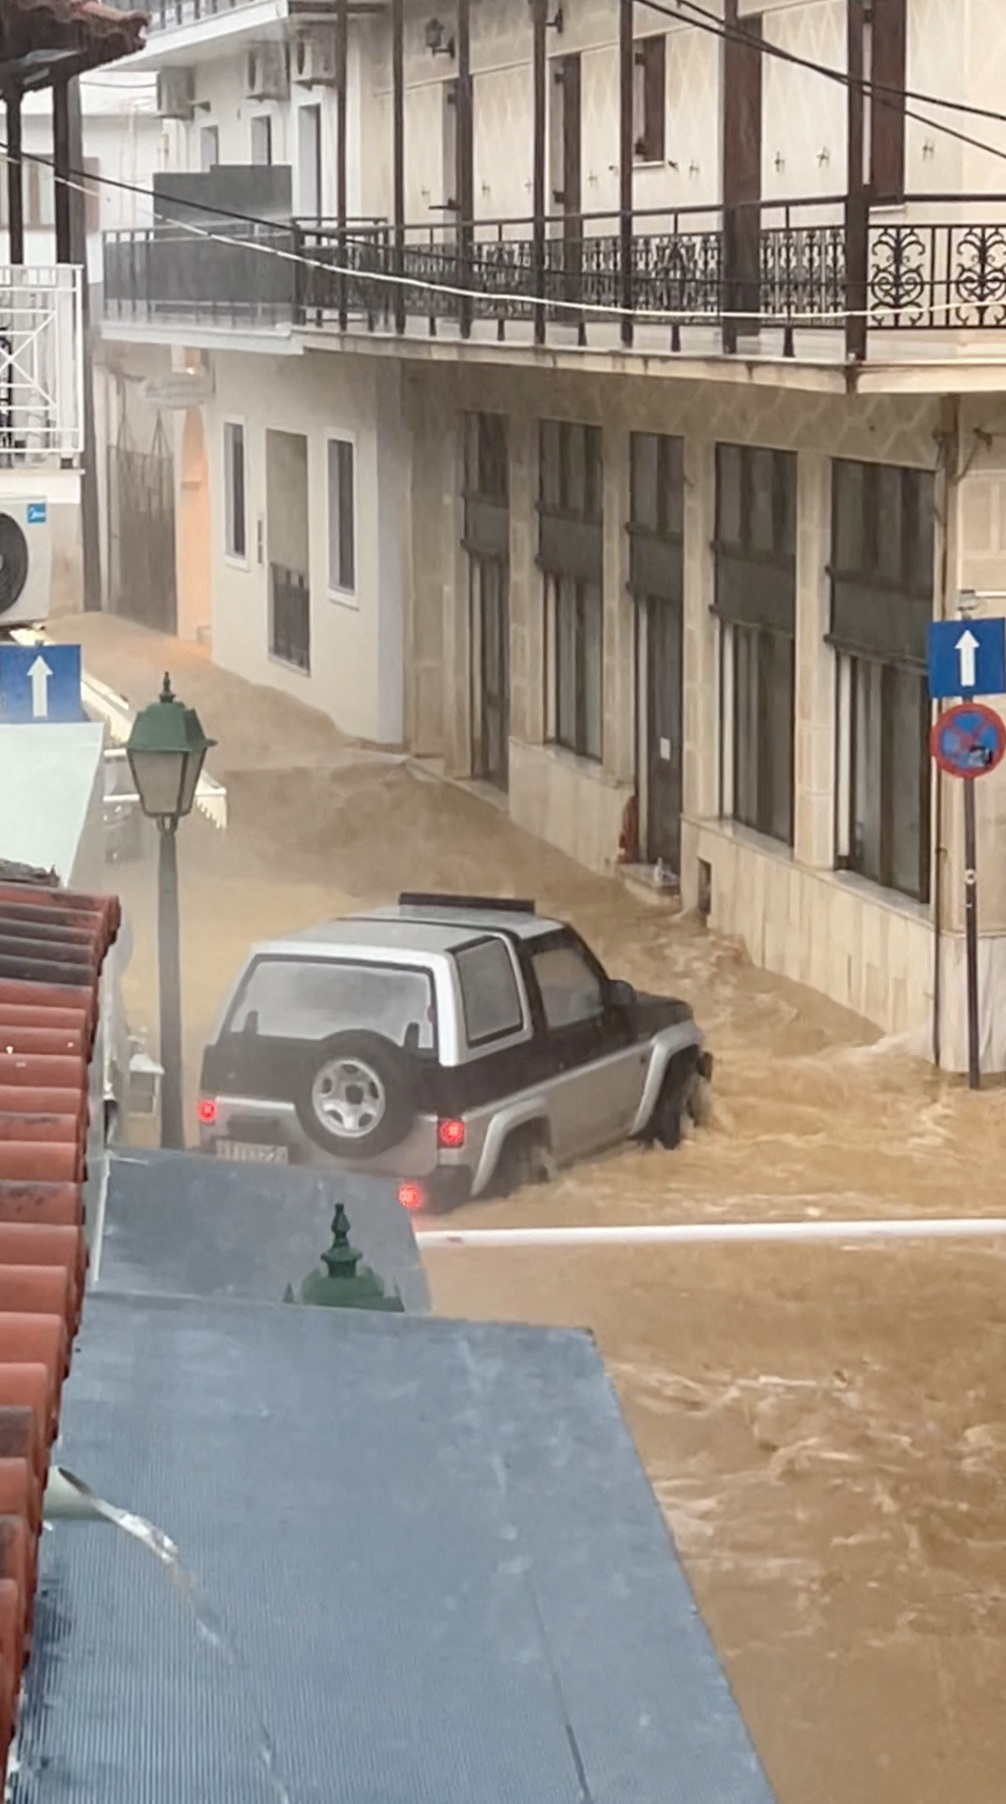 Sintflutartiger Regen hat einige Autos unter Wasser gesetzt, andere wurden ins Meer gespült